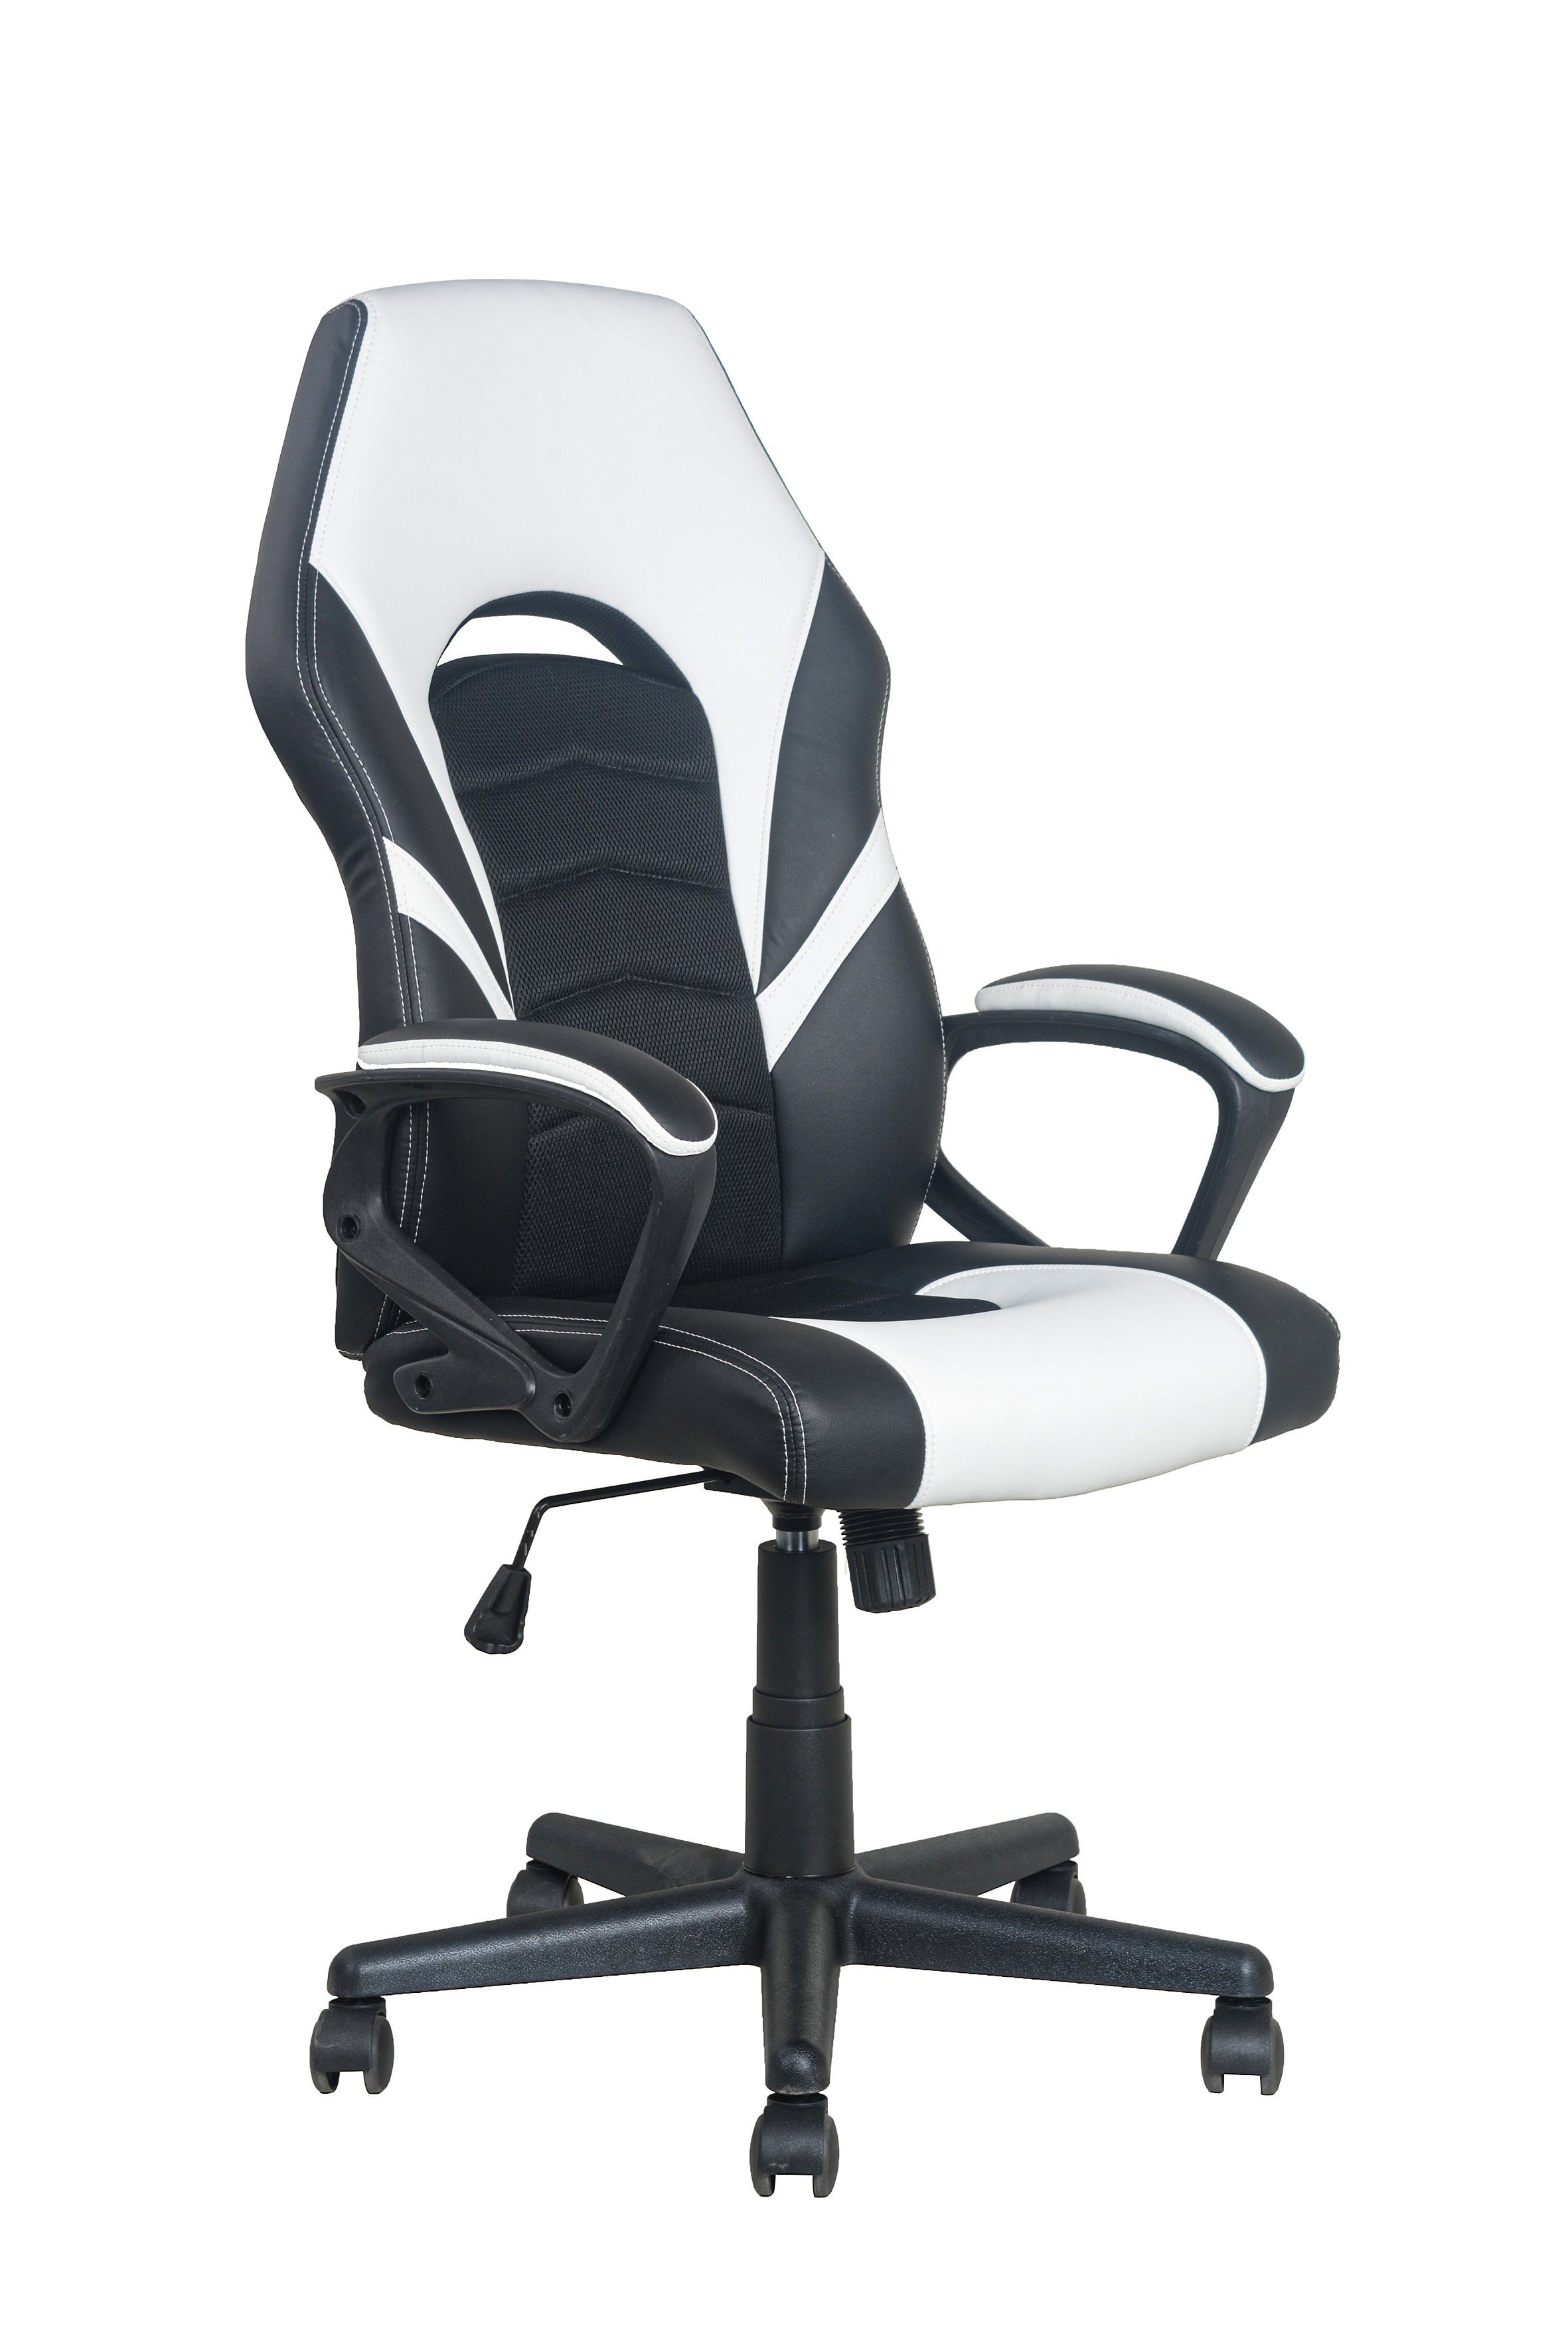 byLIVING Chefsessel FREEZE, Gaming-Stuhl mit Verstellmöglichkeiten schwarz/weiß | Chefsessel